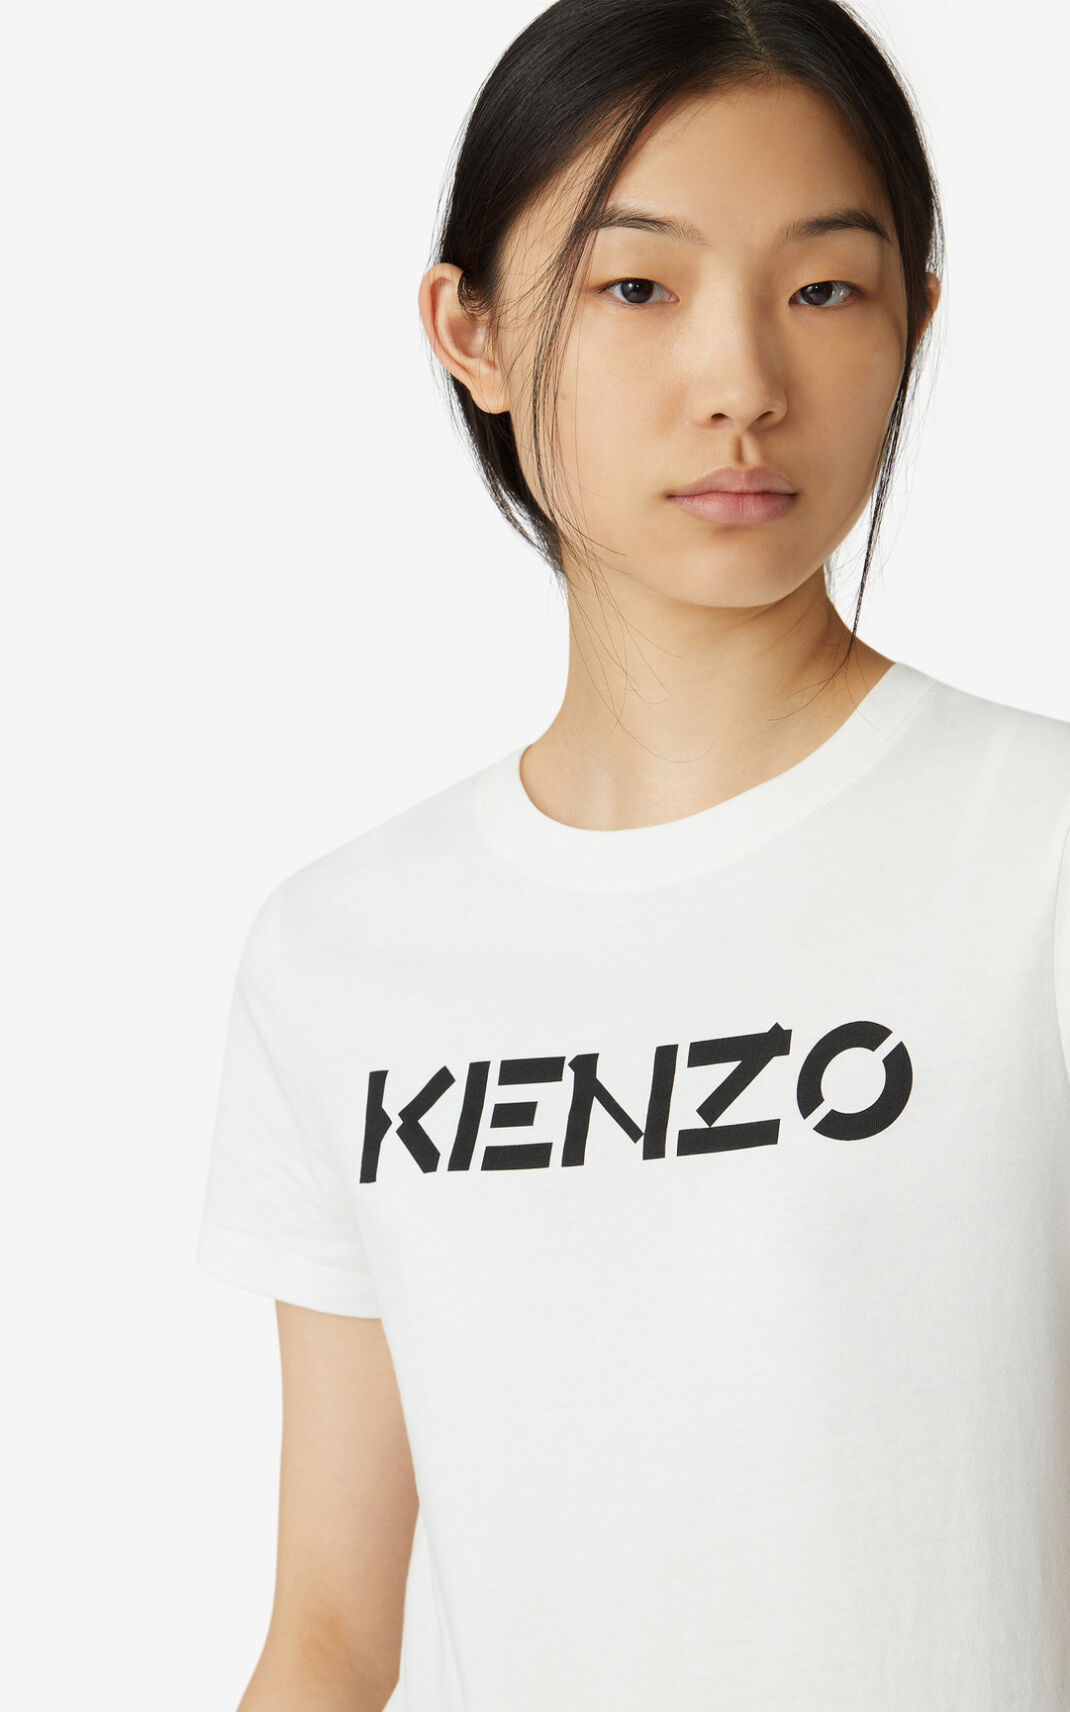 Kenzo Logo Tシャツ レディース 白 - ZFMICQ012